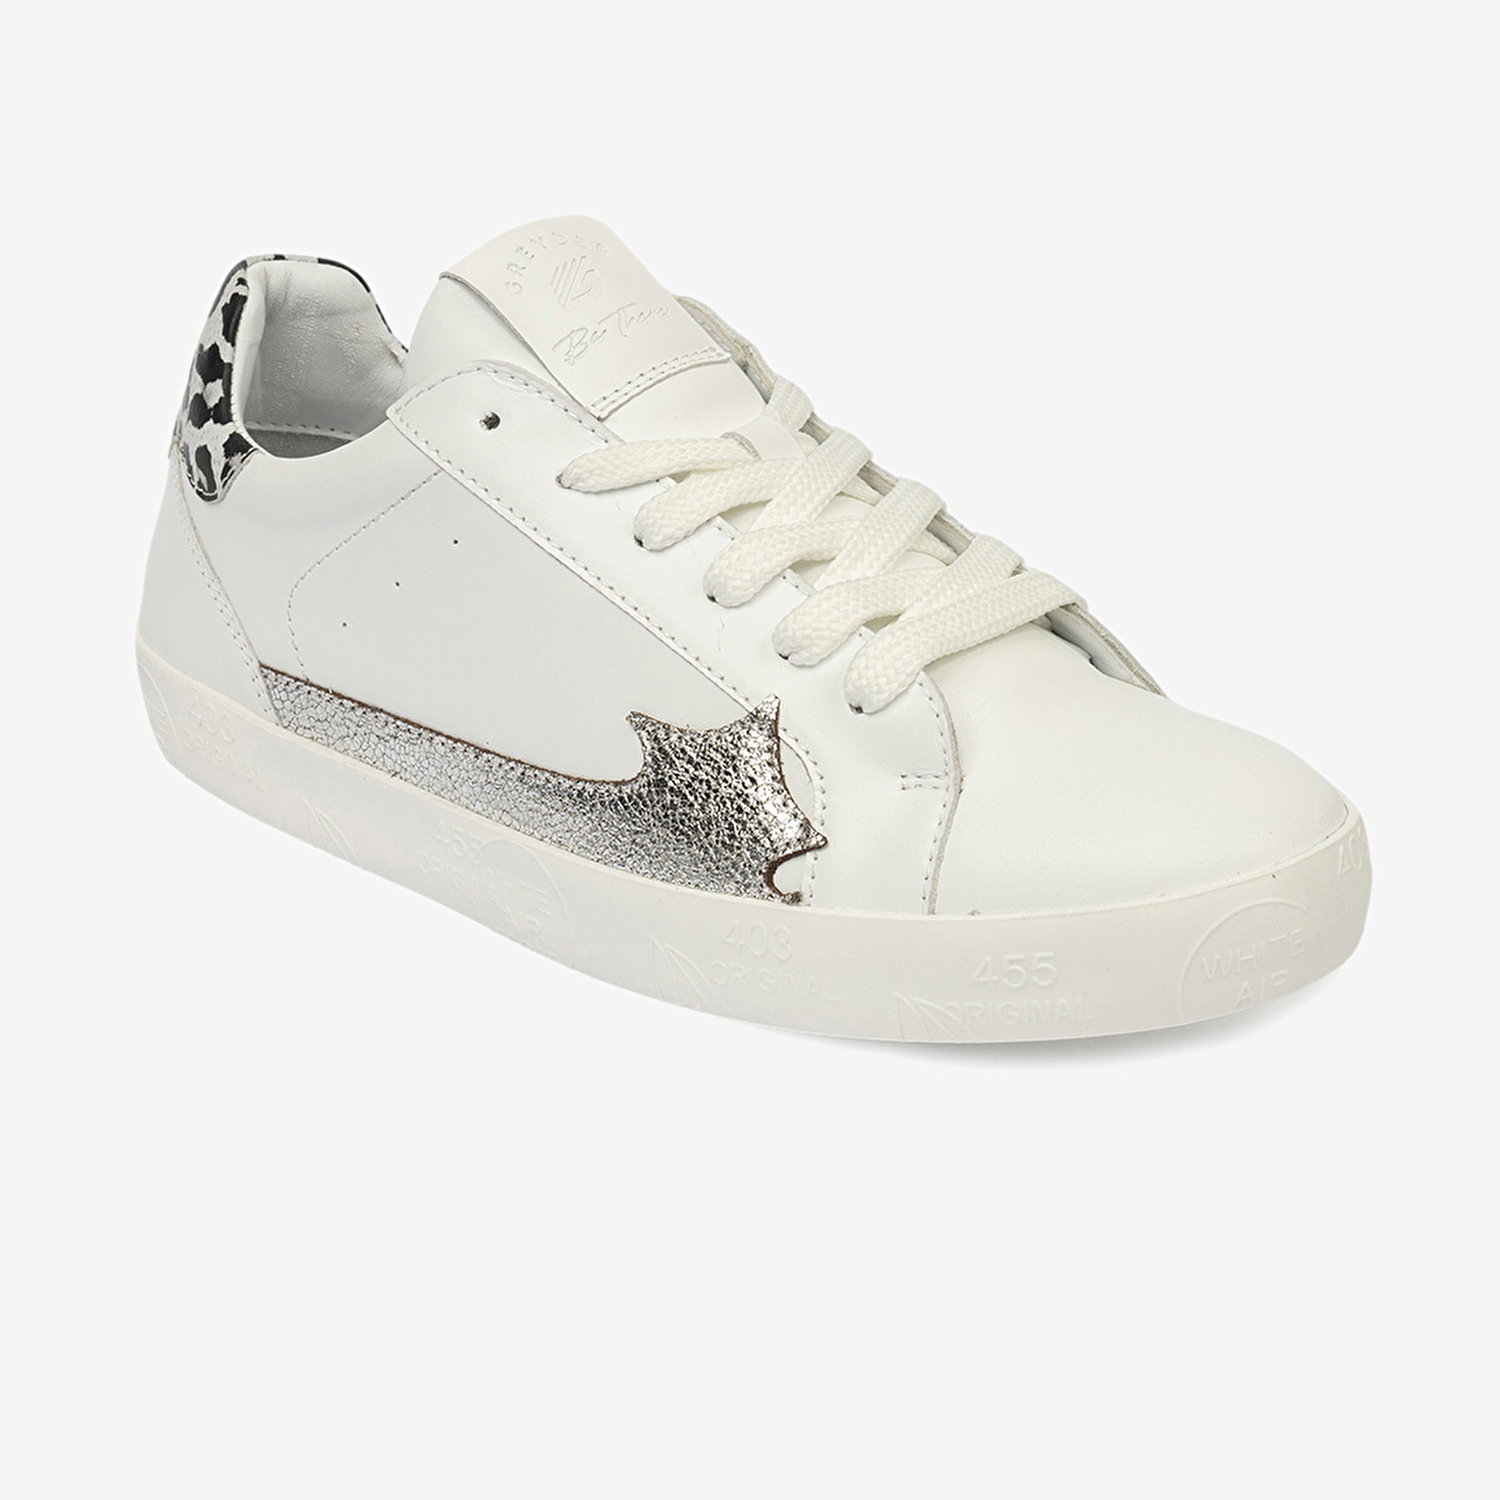 Kadın Beyaz Gümüş Hakiki Deri Sneaker Ayakkabı 4Y2SA33370-1